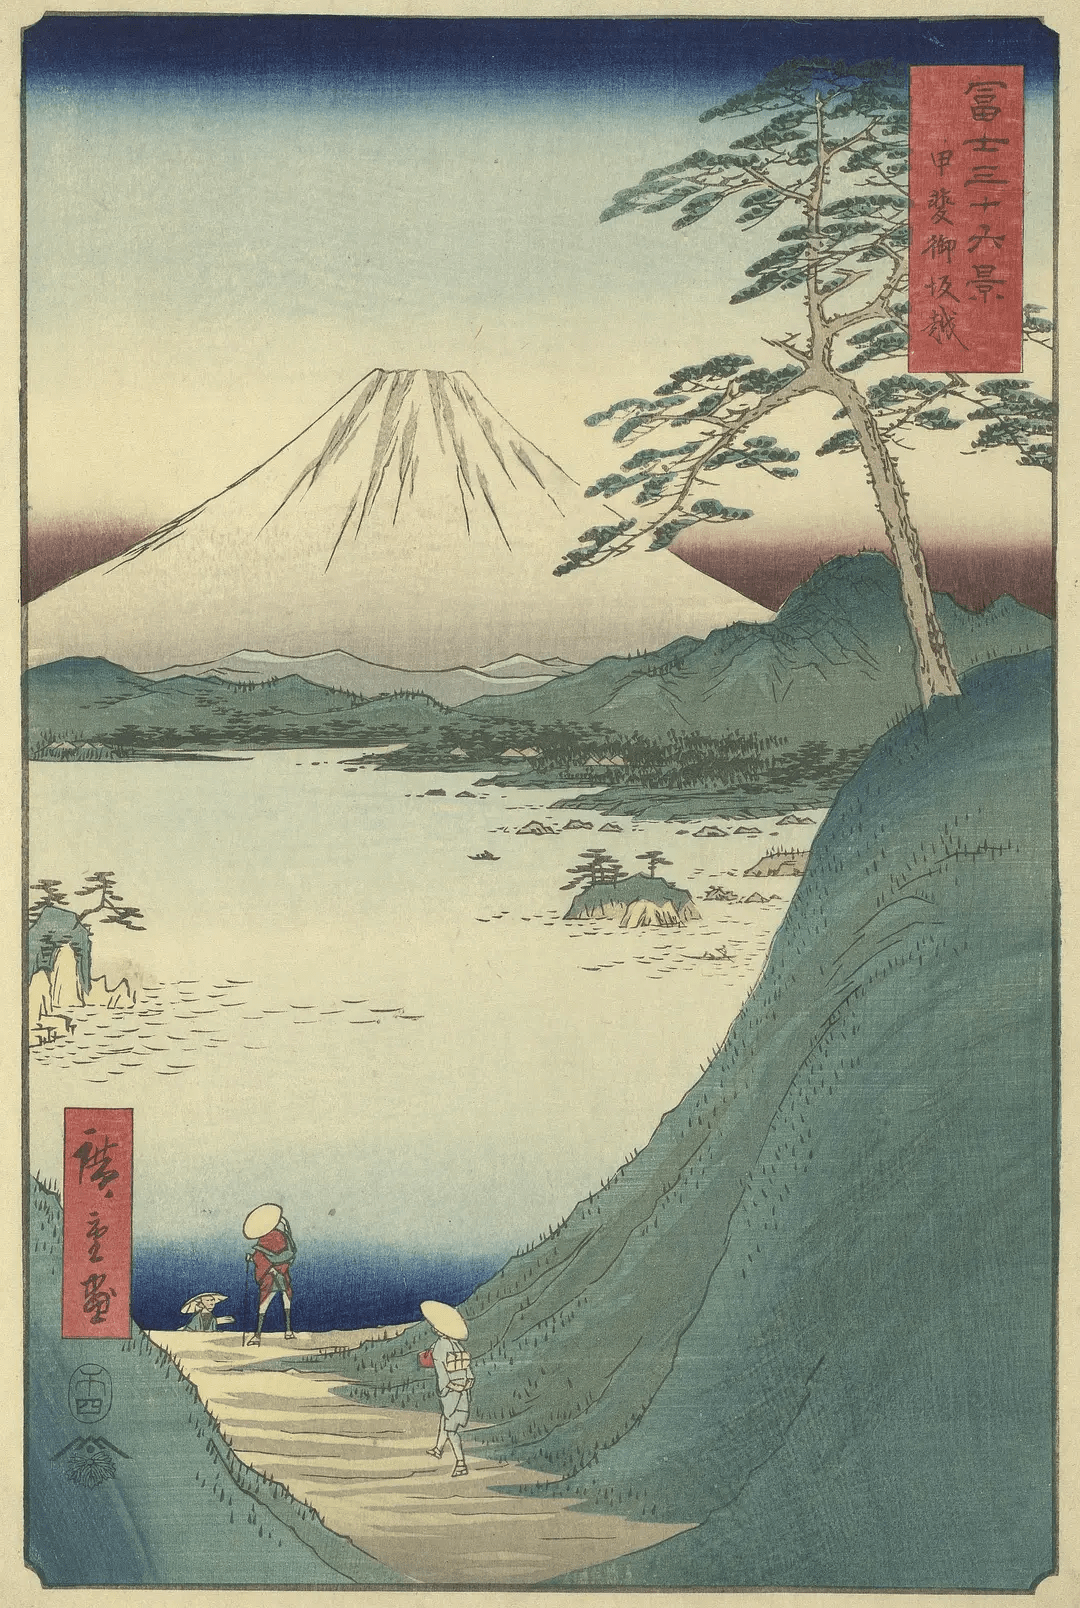 浮世绘版画系列《富岳三十六景》的25年后,歌川广重也开始关注富士山